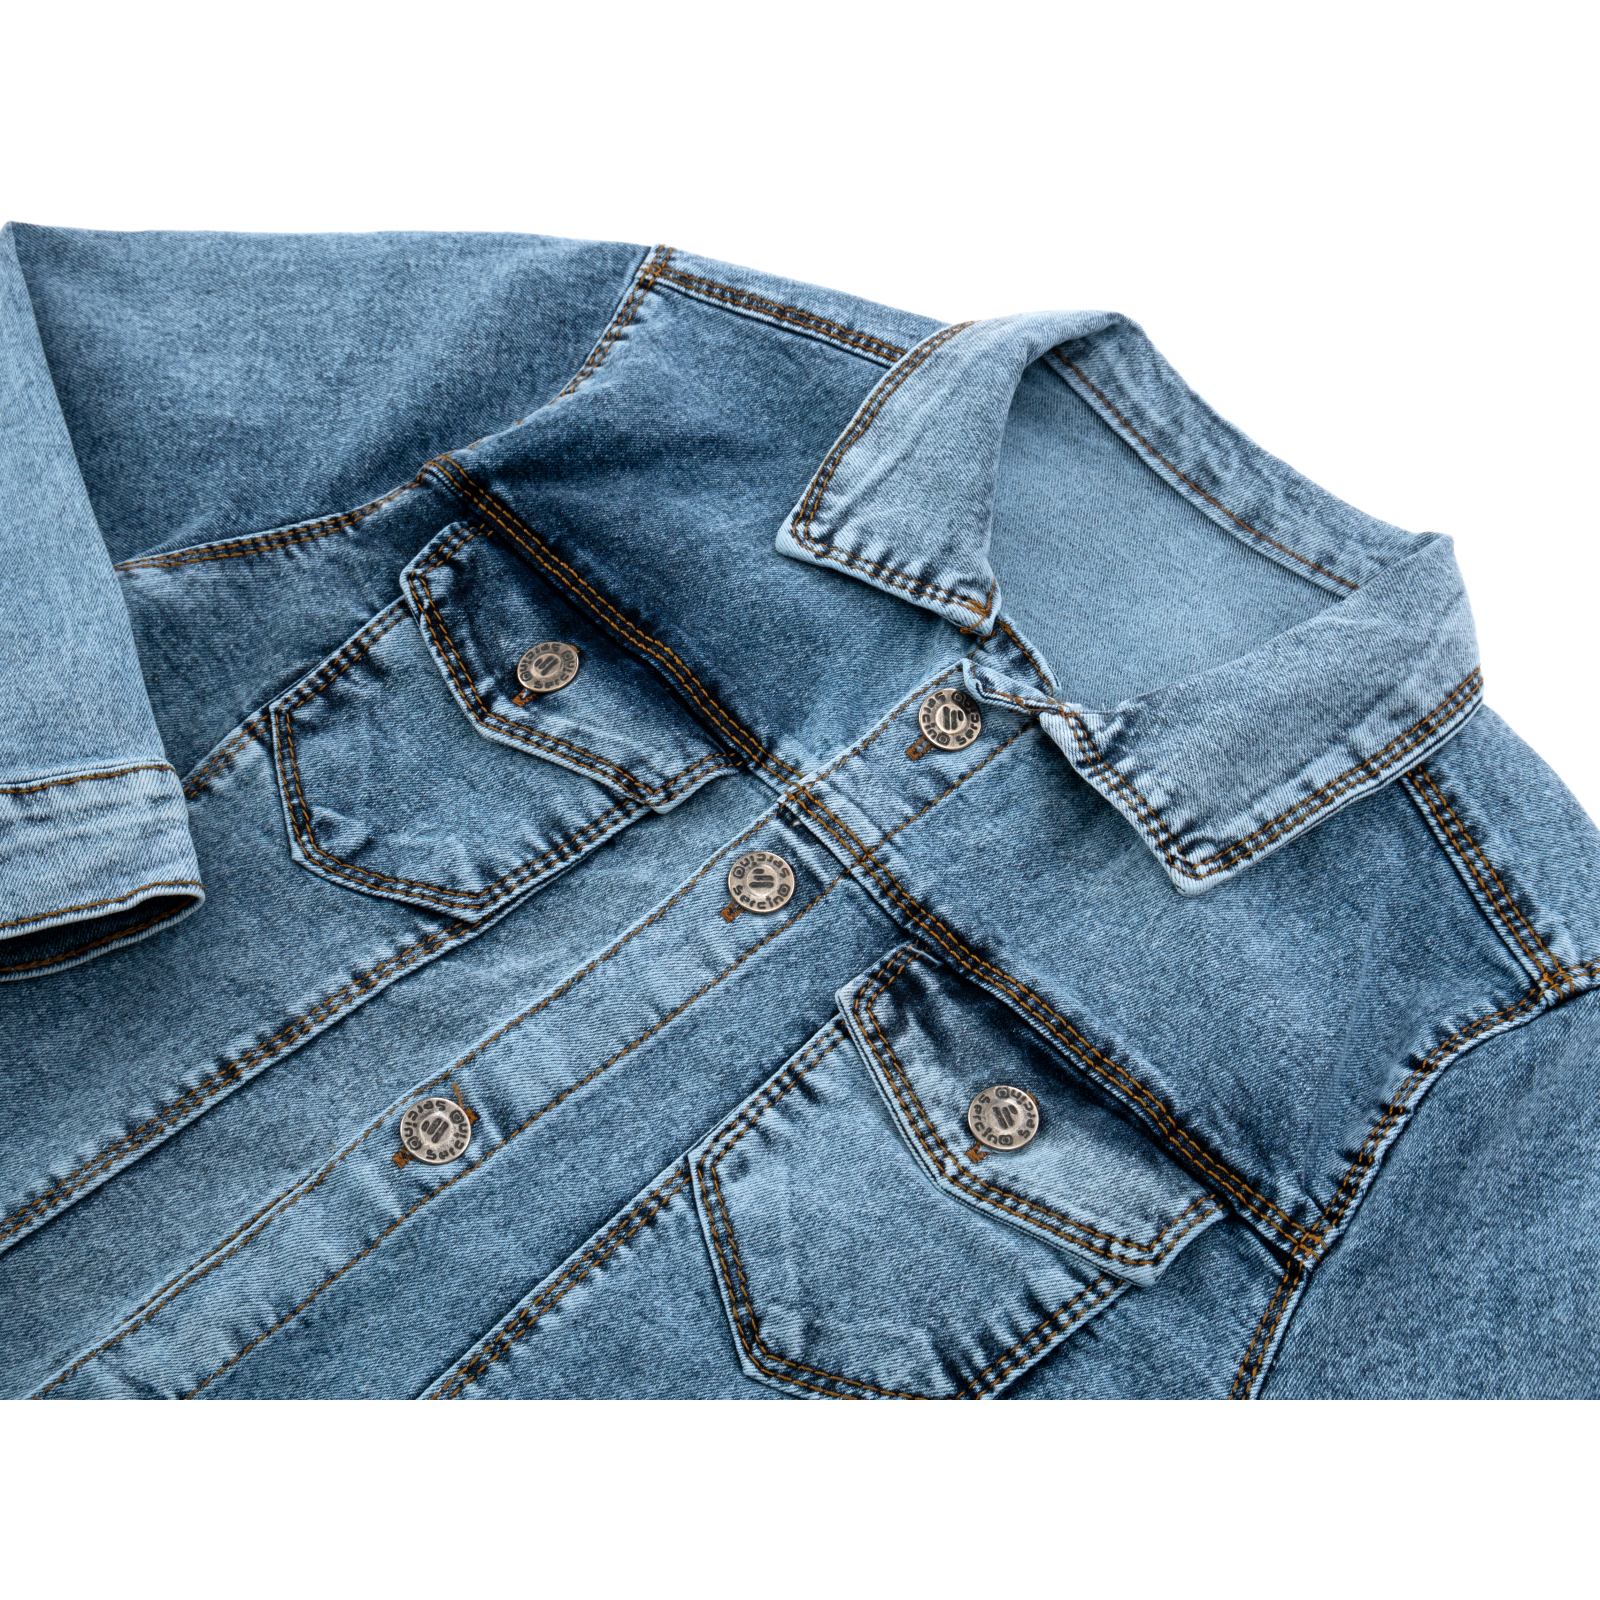 Пиджак Sercino джинсовый (99723-134B-blue) изображение 3